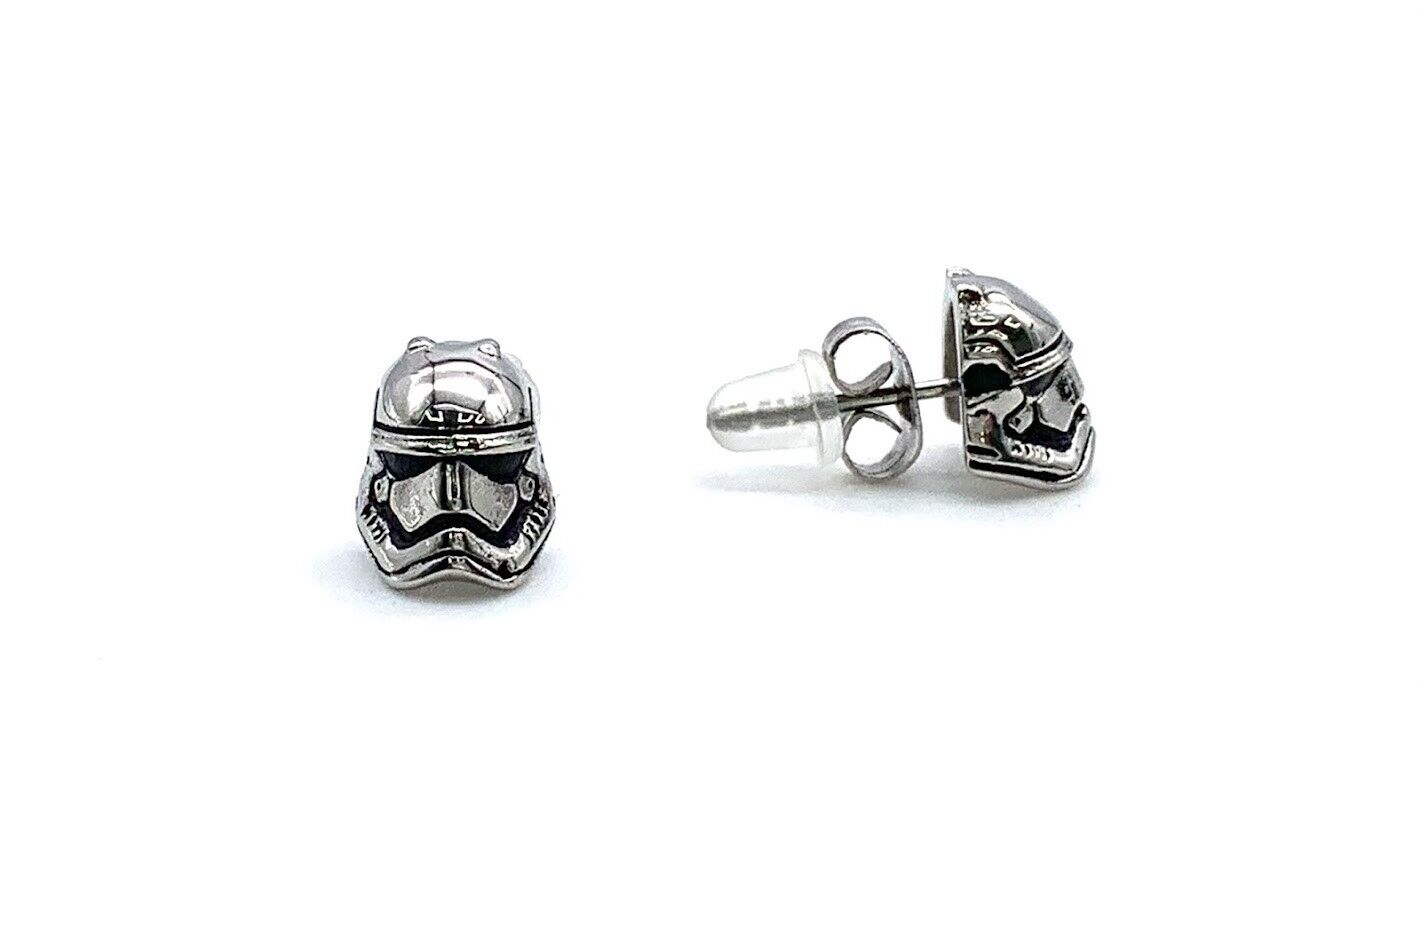 HSN Star Wars Stainless Steel Stormtrooper Stud Earring.